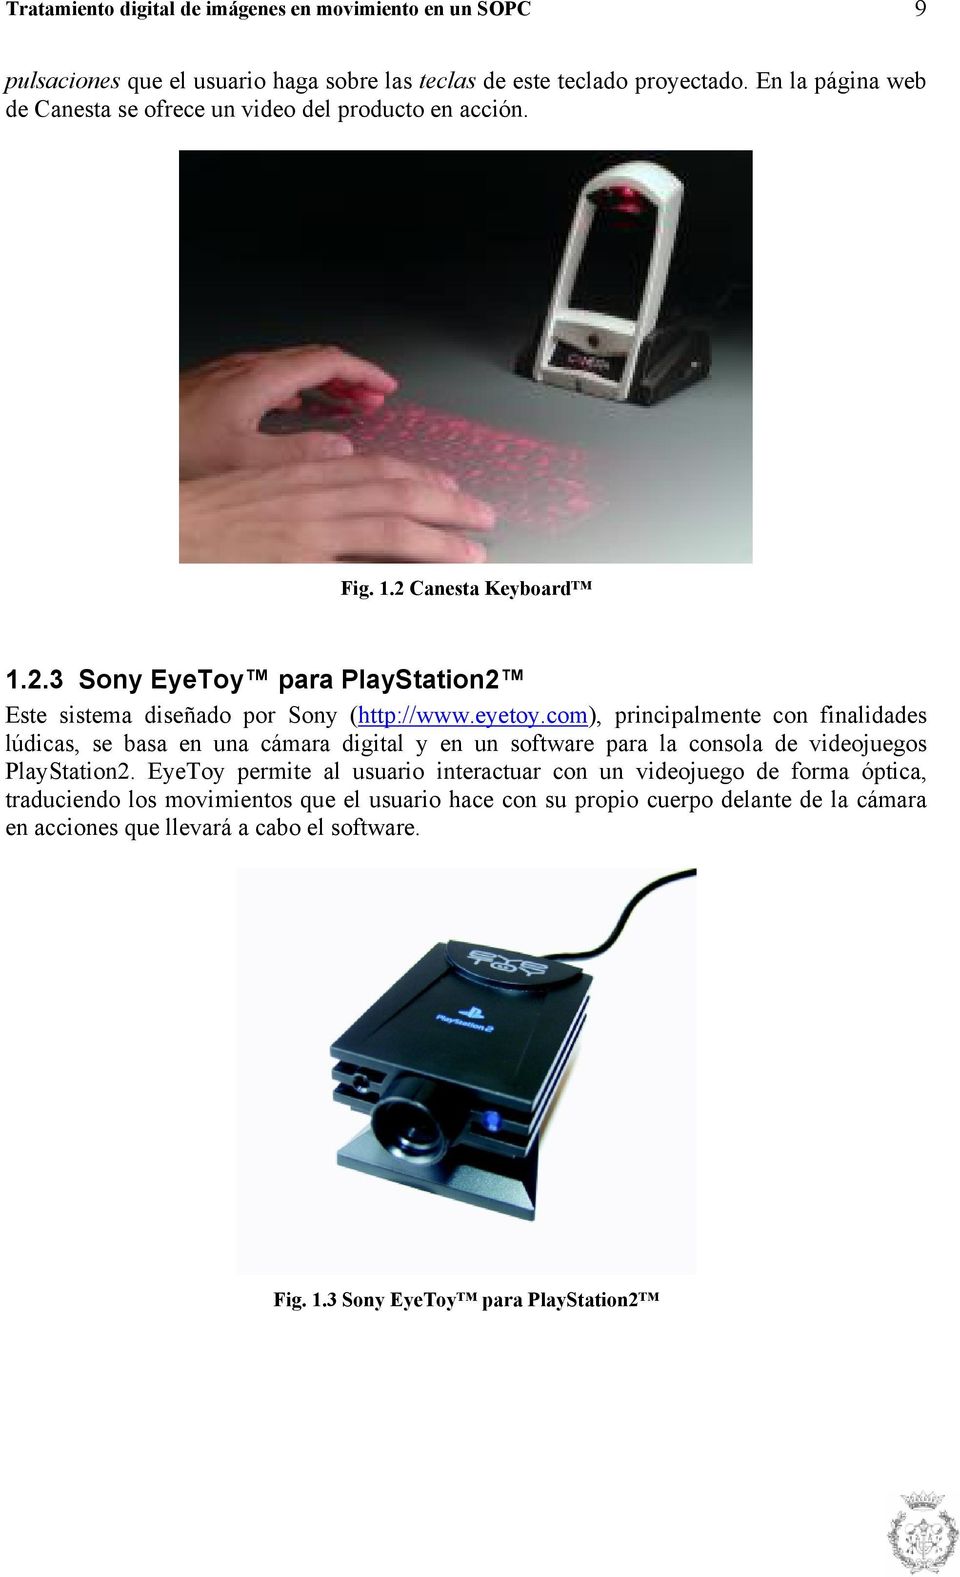 eyeoy.com), principalmene con finalidades lúdicas, se basa en una cámara digial y en un sofware para la consola de videojuegos PlaySaion2.